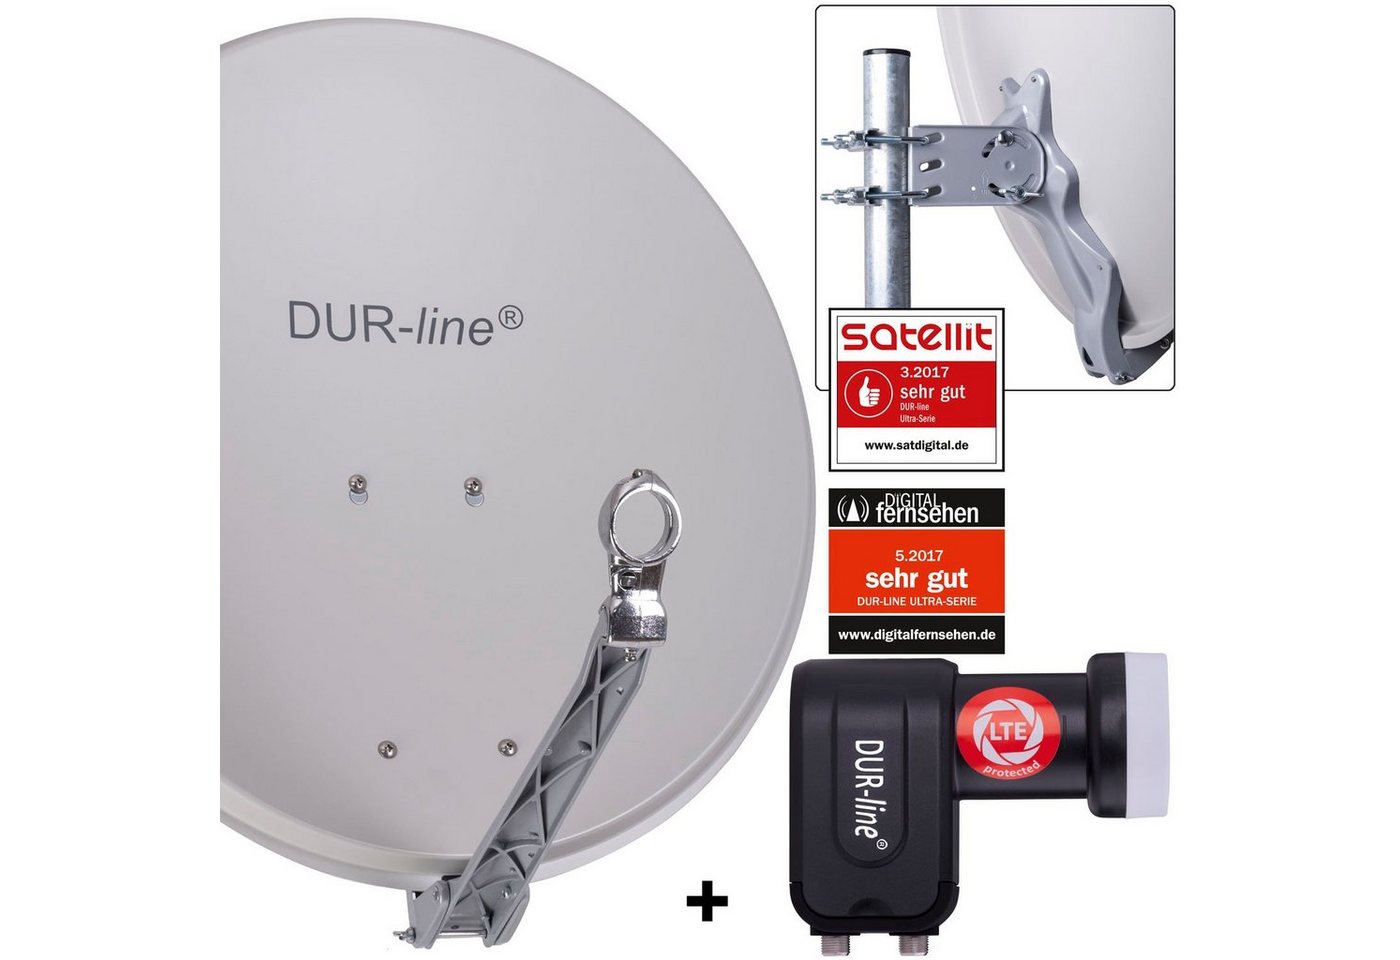 DUR-line DUR-line 2 Teilnehmer Set - Qualitäts-Alu-Satelliten-Komplettanlage - Sat-Spiegel von DUR-line